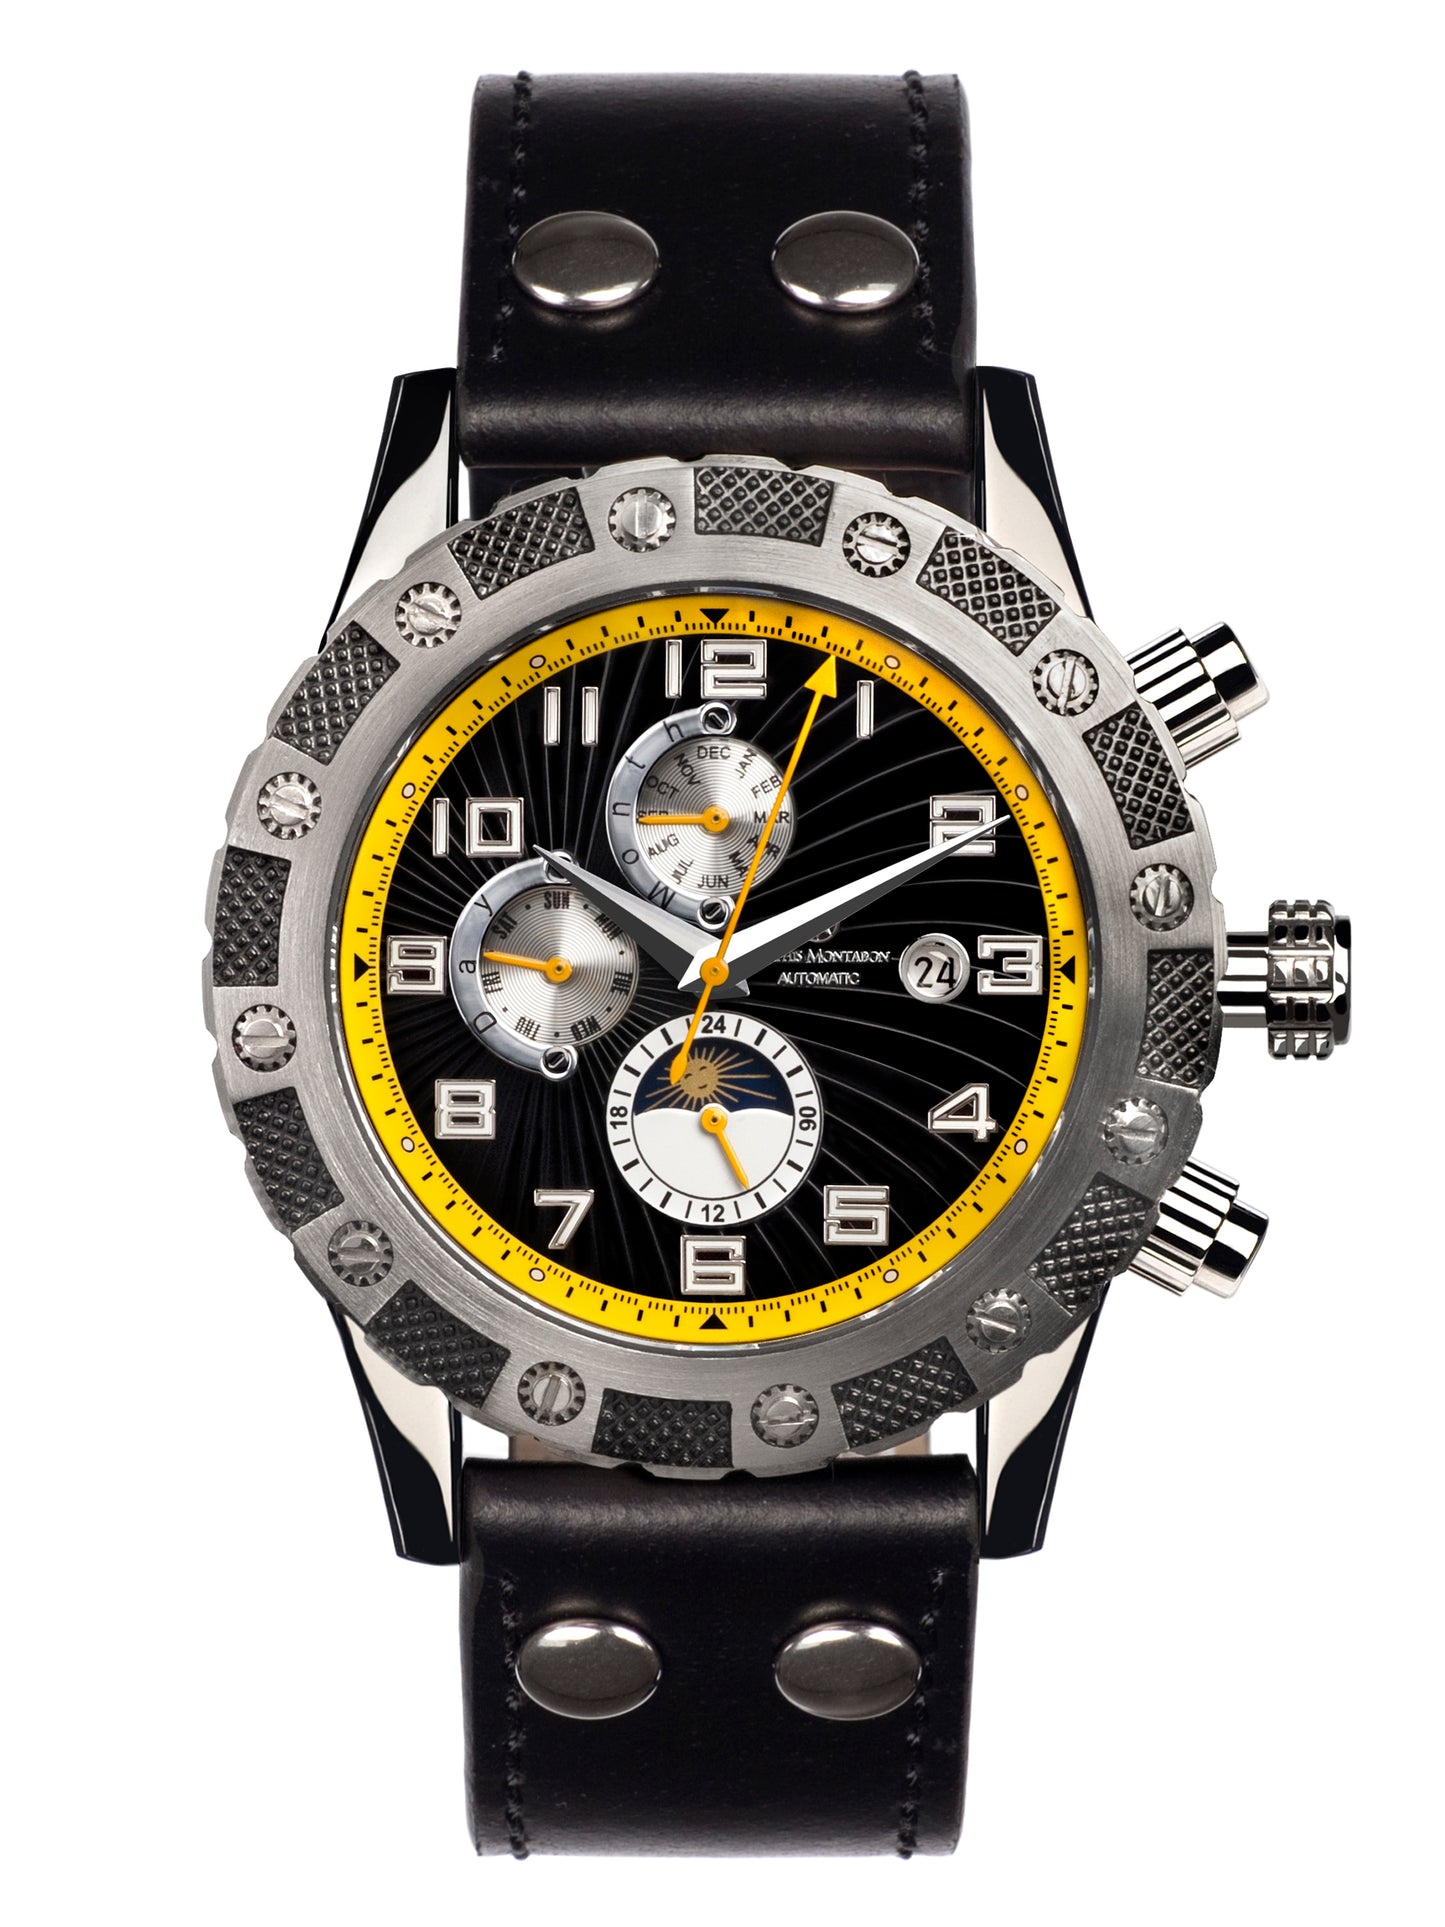 Automatic watches — Le Général — Mathis Montabon — gelb